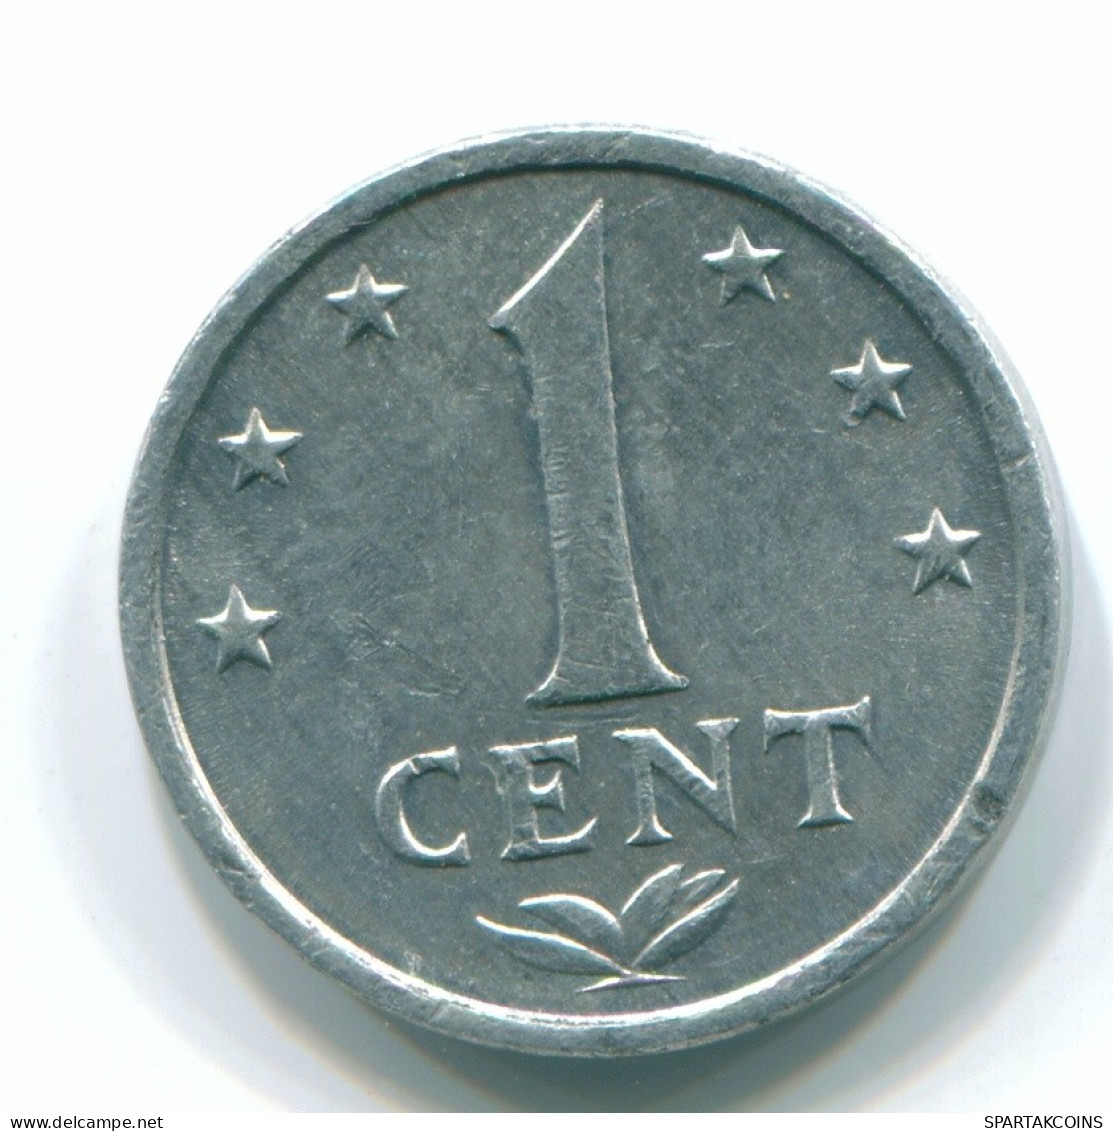 1 CENT 1979 NETHERLANDS ANTILLES Aluminium Colonial Coin #S11171.U.A - Netherlands Antilles